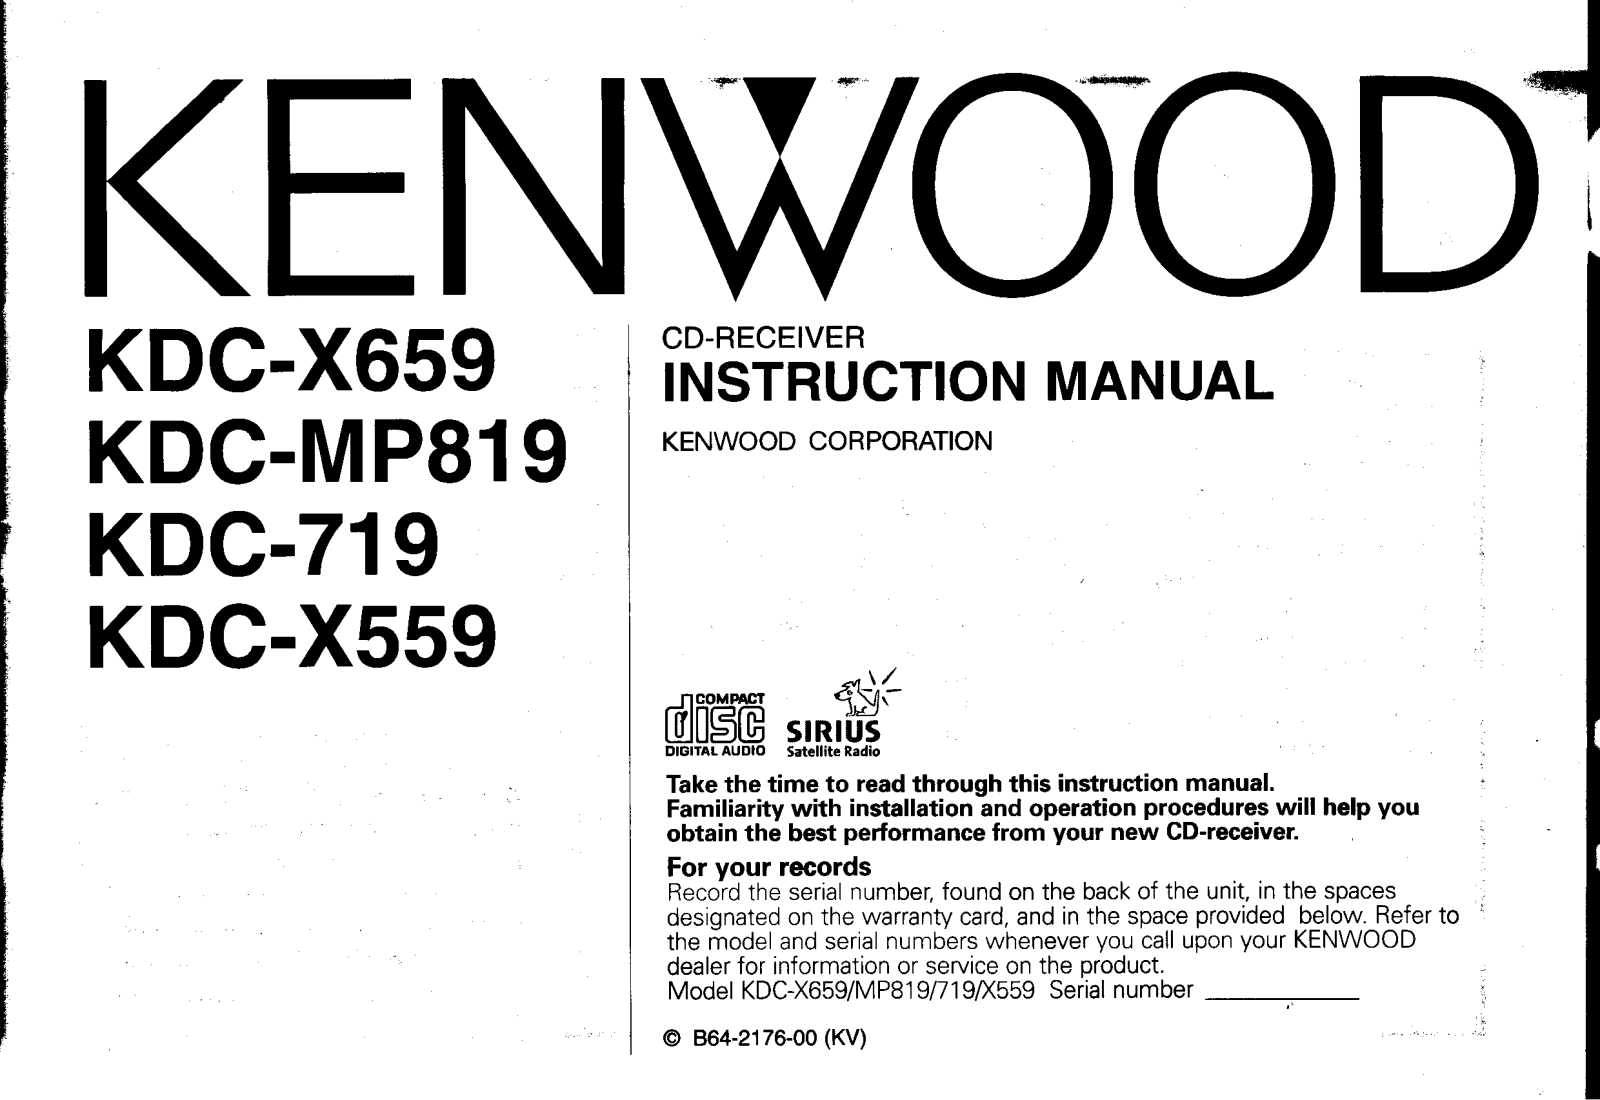 Kenwood KDC-X559, KDC-X659, KDC-MP819, KDC-719 Owner's Manual